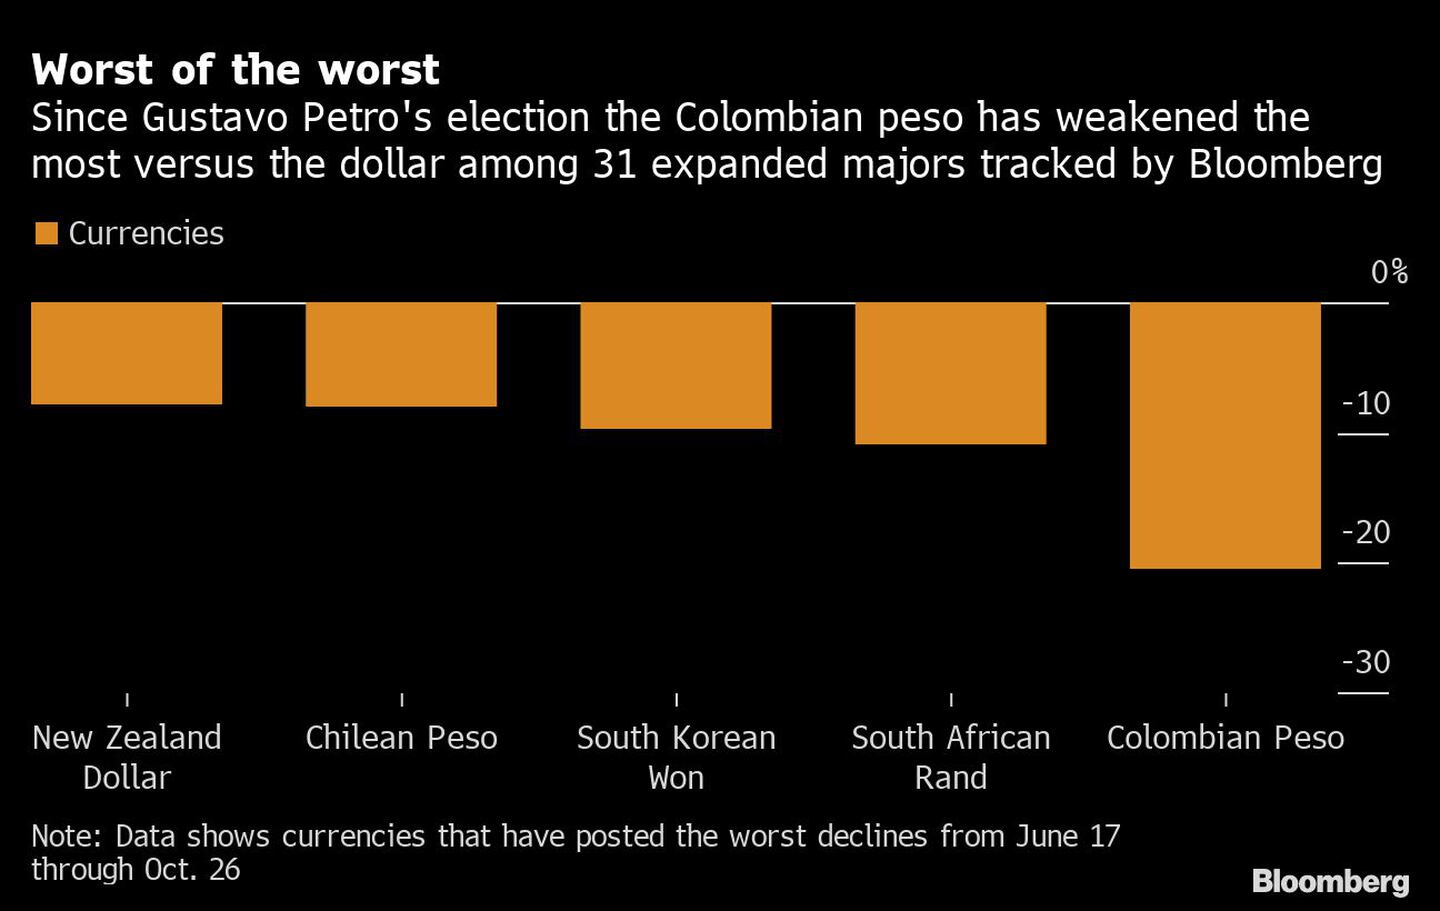 Desde la elección de Gustavo Petro, el peso colombiano es el que más se ha debilitado frente al dólar entre las 31 principales divisas analizadas por Bloombergdfd